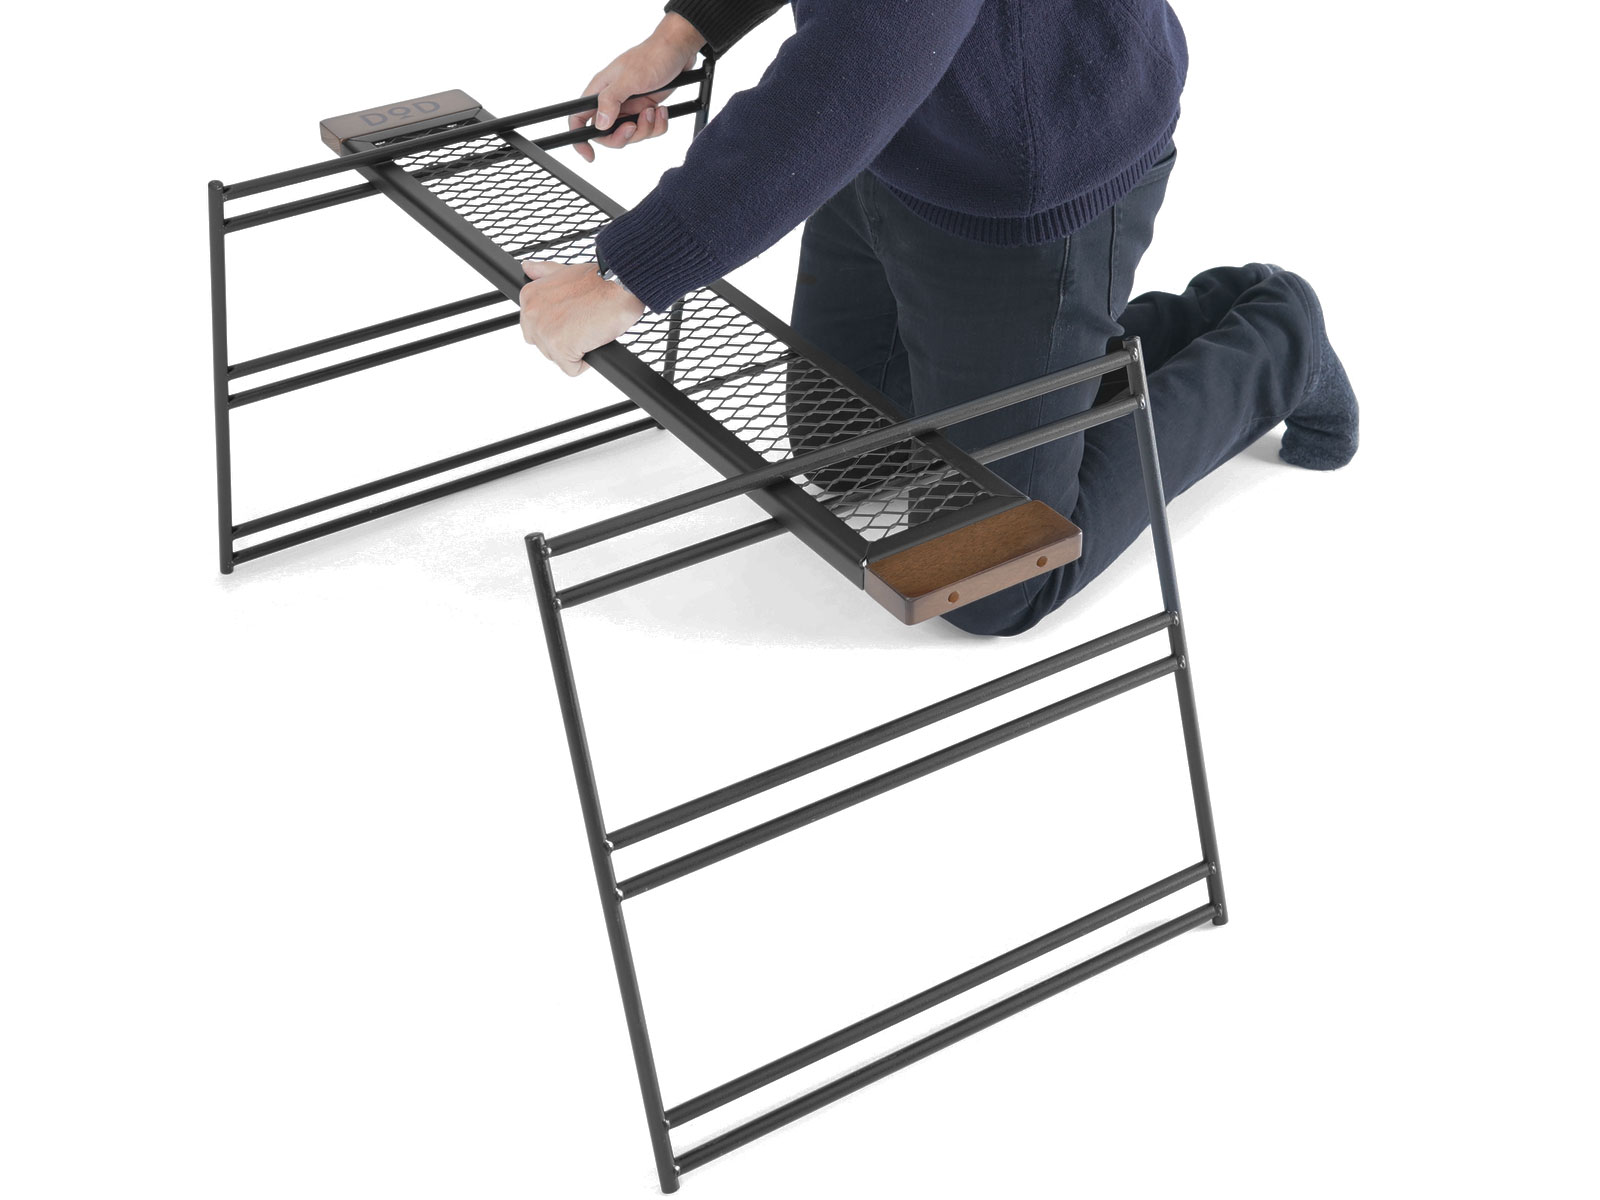  テキーラテーブルの組立／設営方法